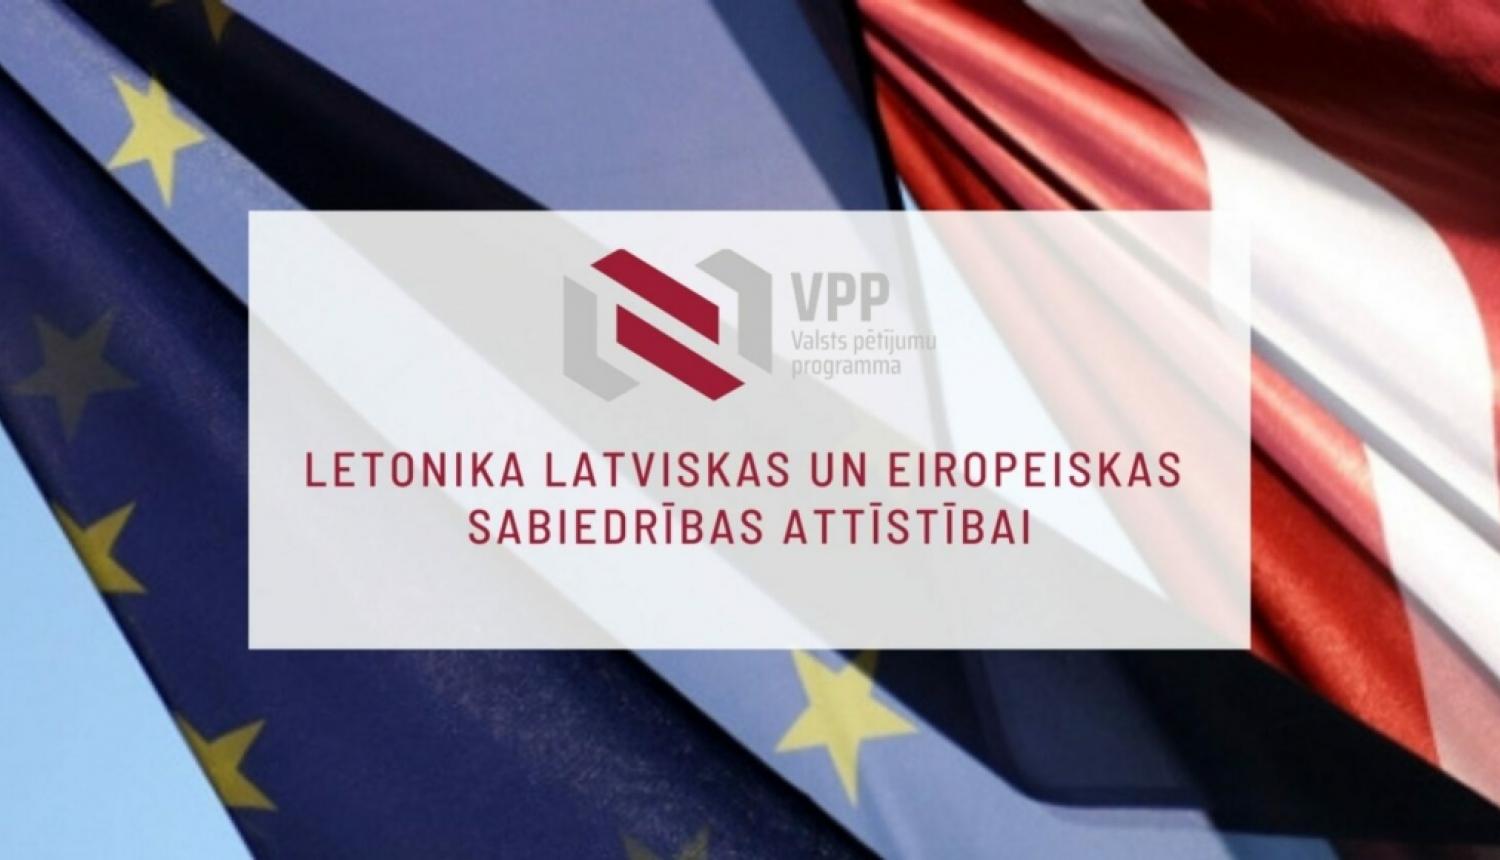 Zināmi valsts pētījumu programmas “Letonika latviskas un eiropeiskas sabiedrības attīstībai” projektu konkursa rezultāti